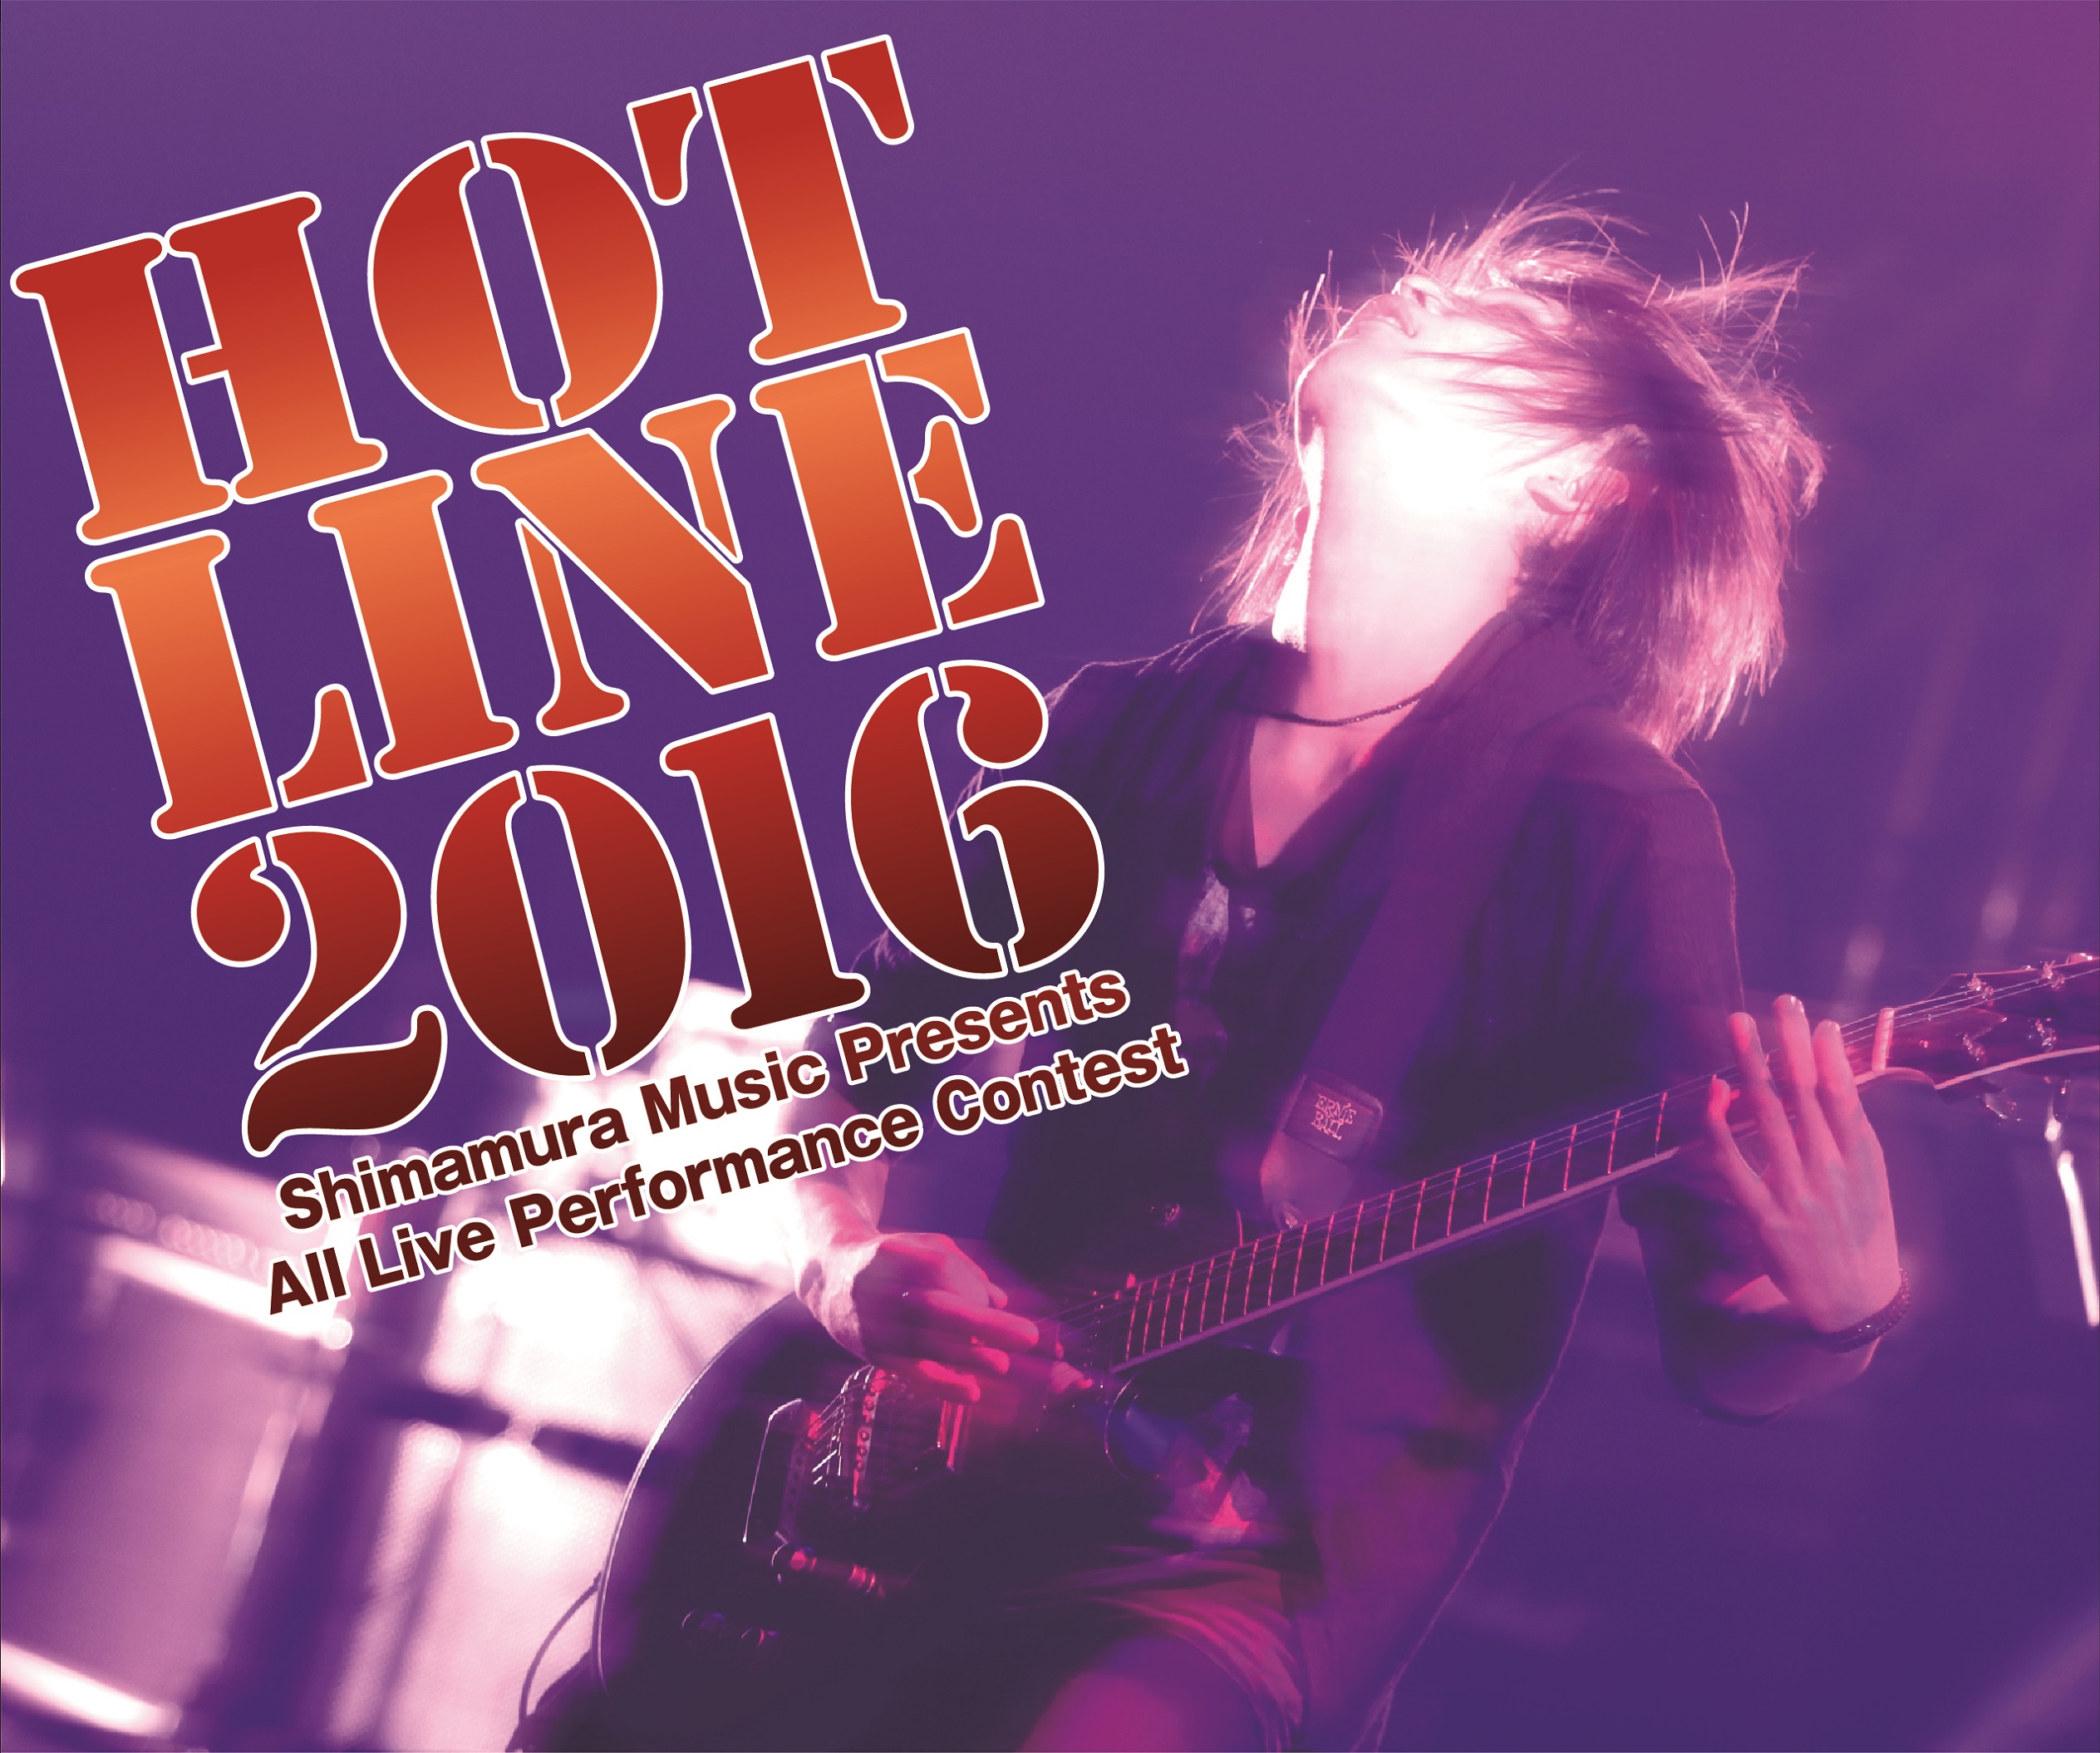 日本最大級のアマチュアバンドコンテスト Hotline16 5 1 日 よりエントリー開始 プレスリリース 島村楽器